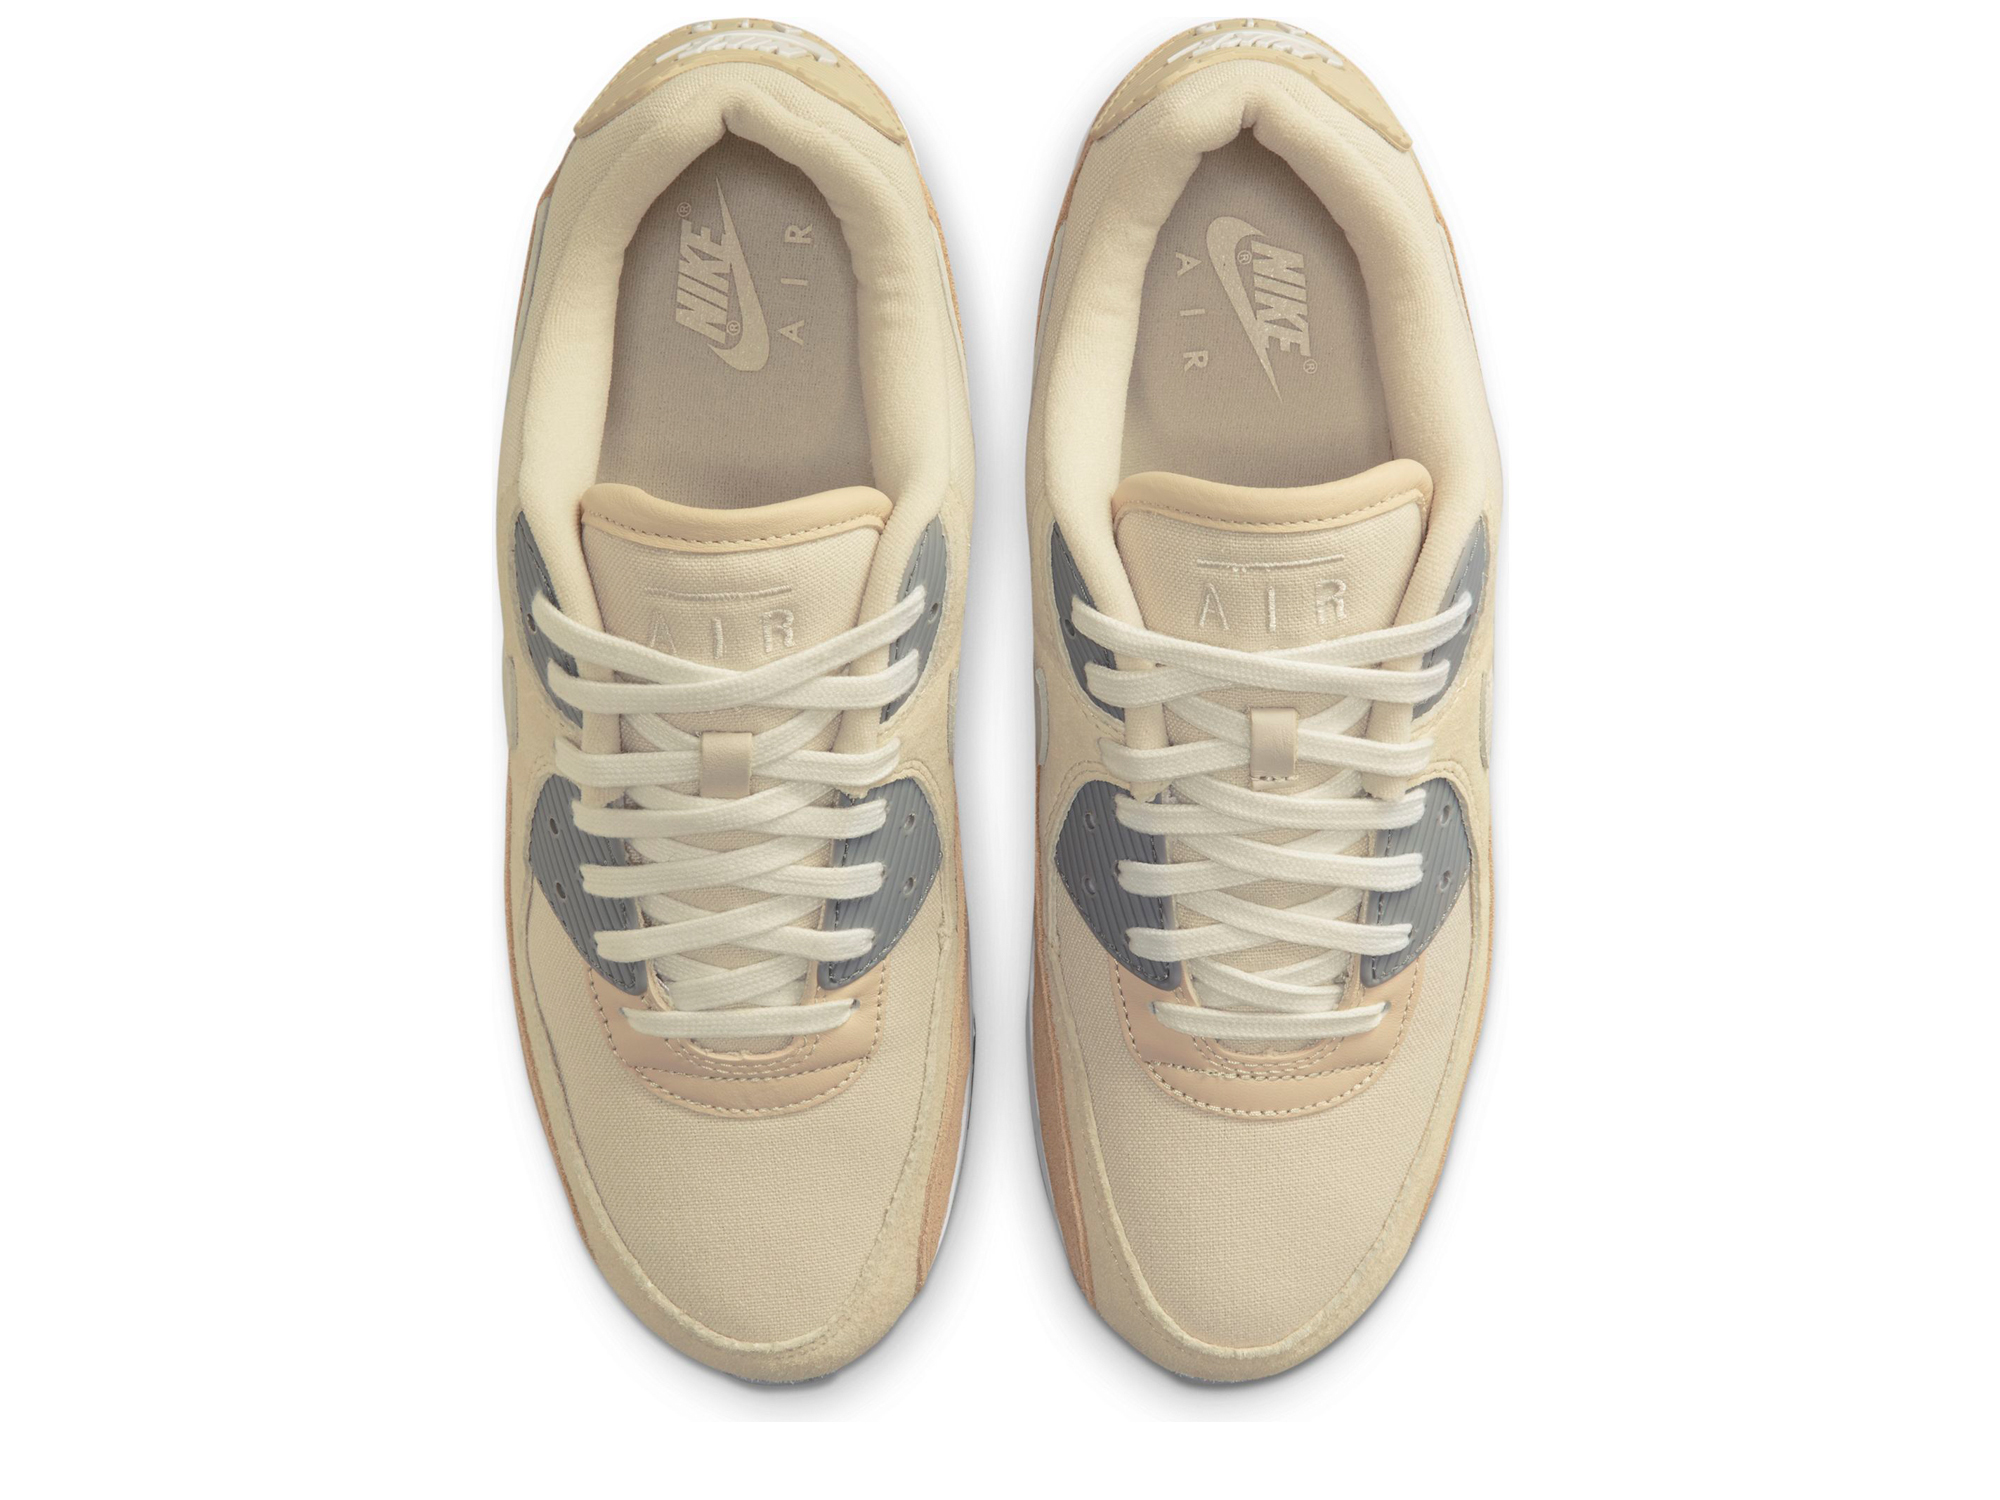 Nike Air Max 90 Premium Herren Sneaker